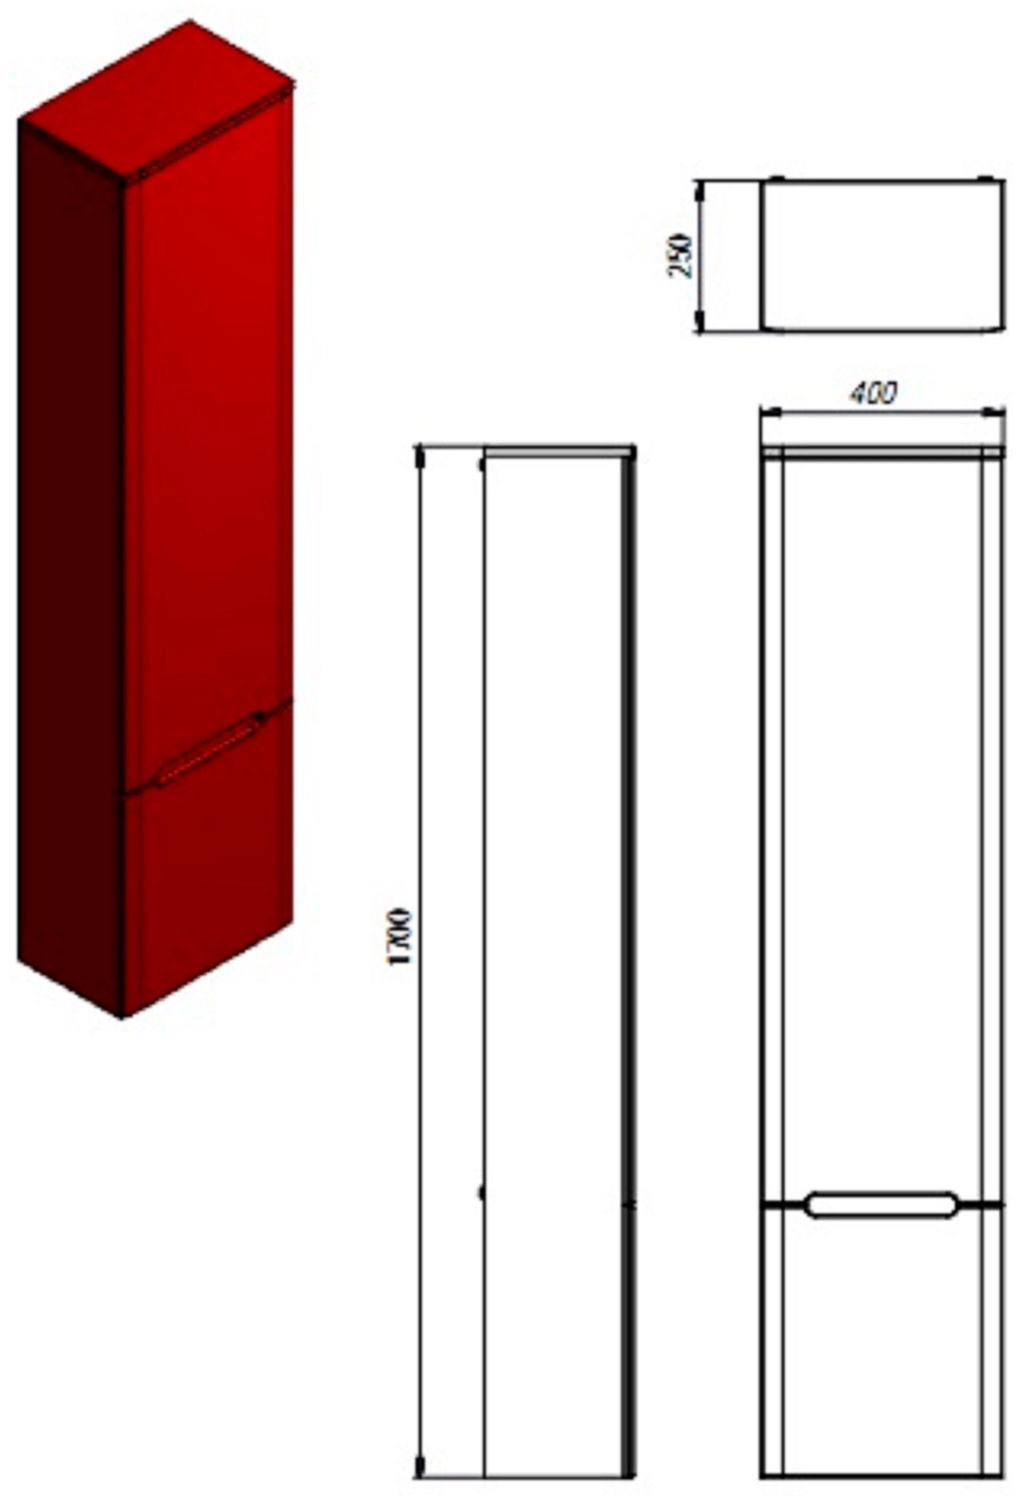 Размеры пенал для ванной 40 см ювента тиволи tvp-190-белый левый №3